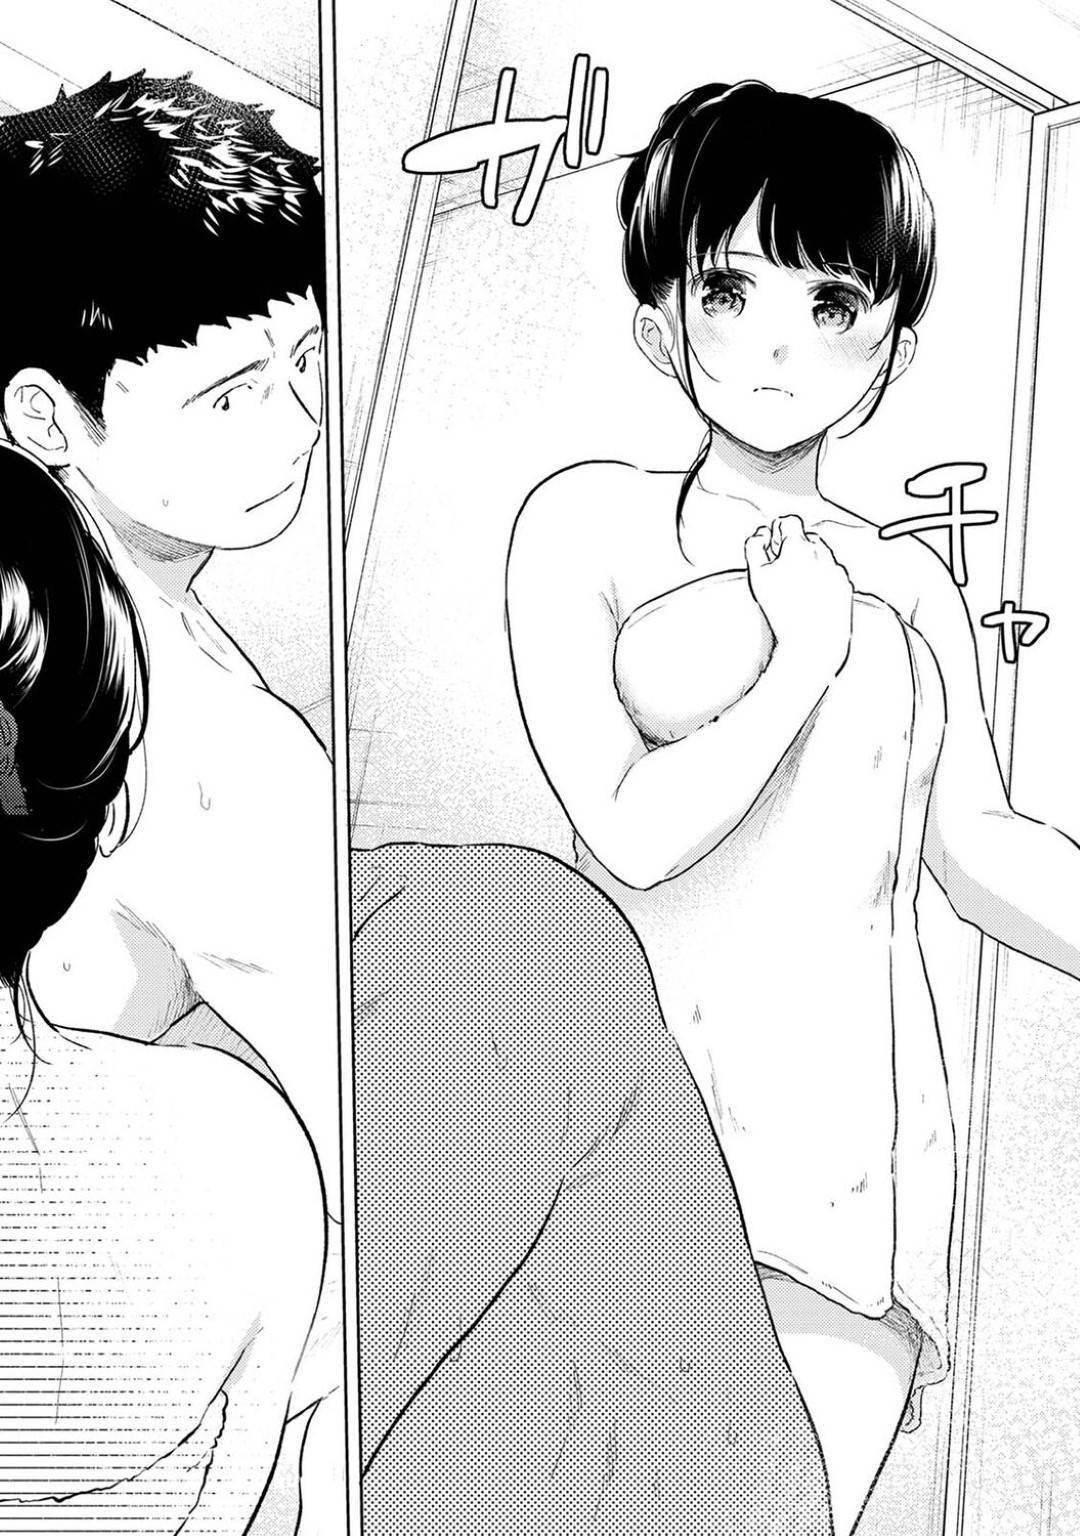 【エロ漫画】年上の男と同居するようになった清楚系スレンダーJK。彼と風呂に入ったことをきっかけにエッチな雰囲気になった彼女は欲情した彼に乳首責めや手マンなどをされたりして感じまくる